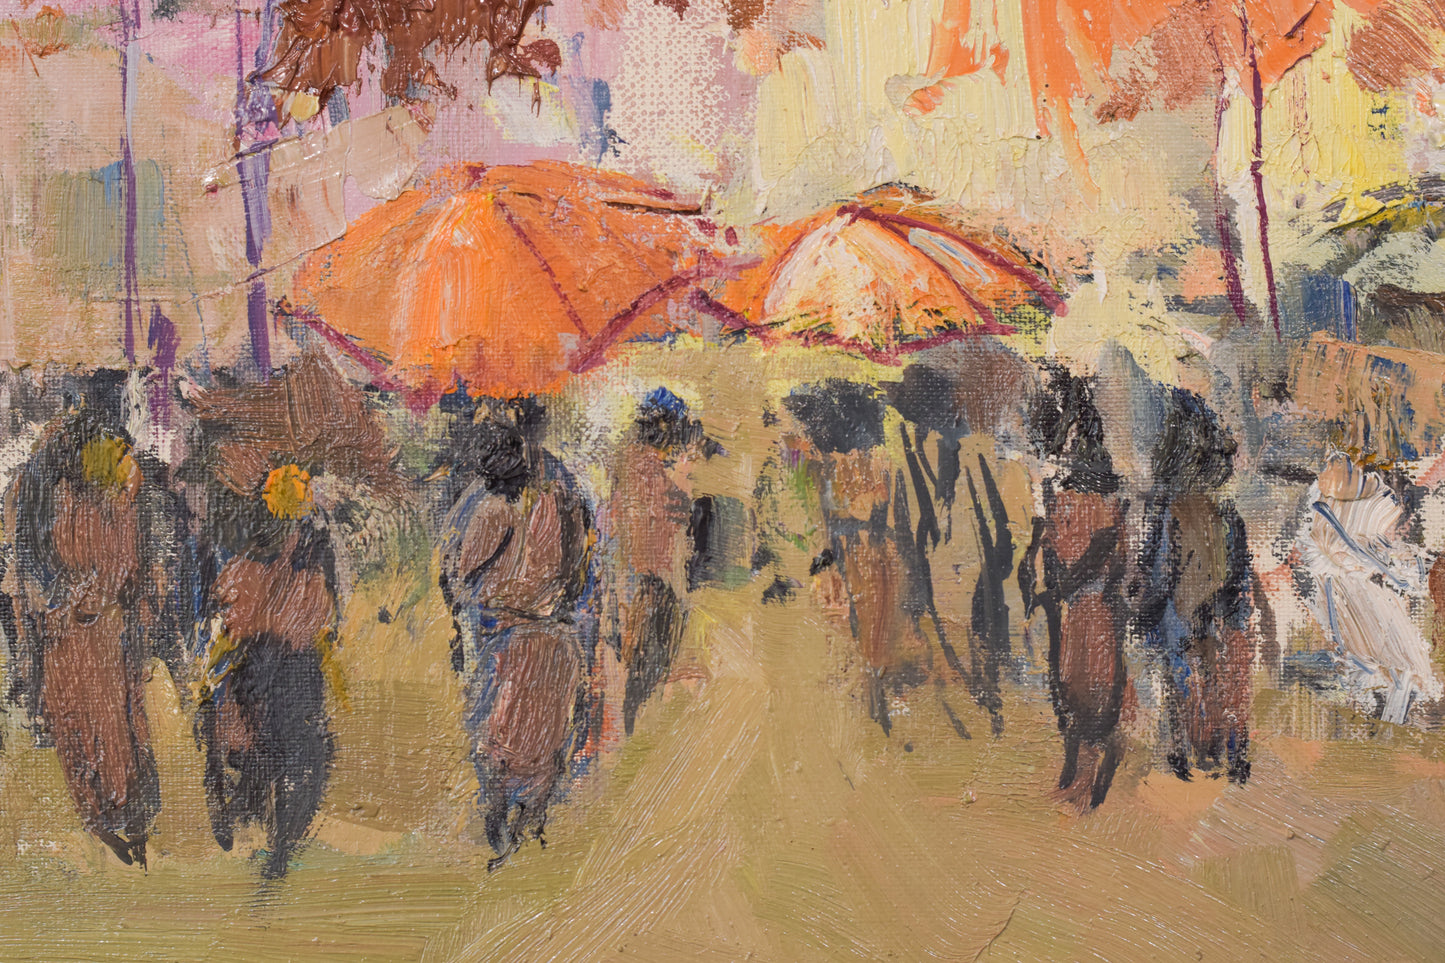 Autumn Market Scene - Oil on Canvas